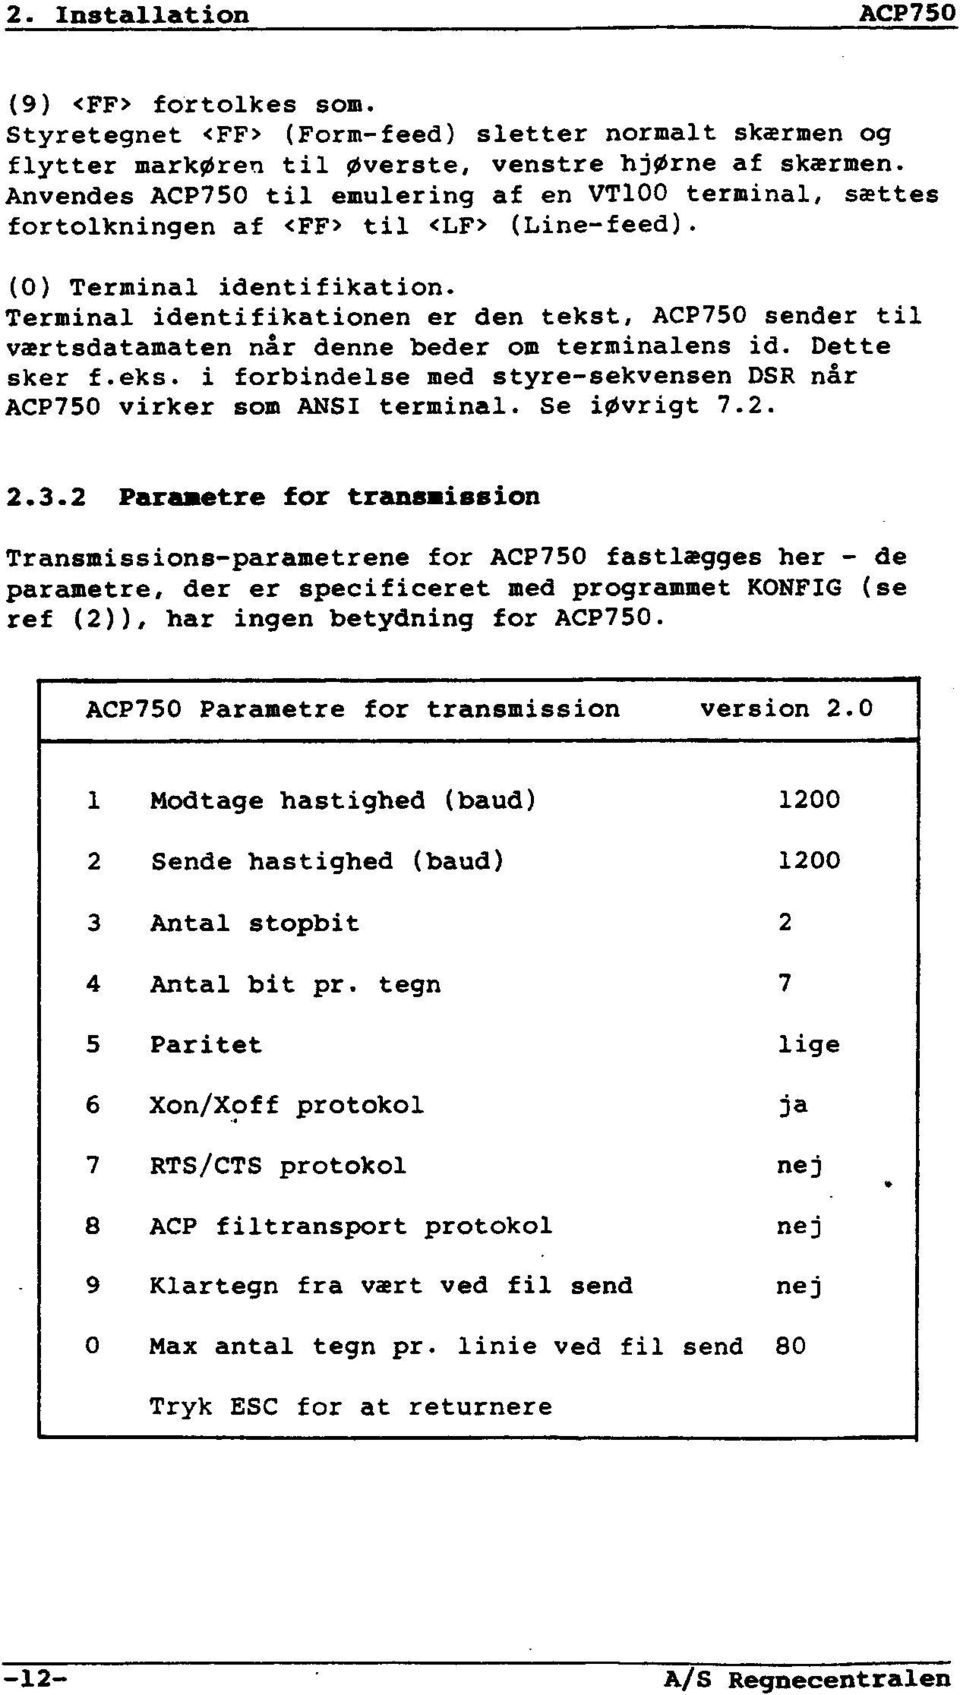 Terminal identifikationen er den tekst, ACP750 sender til værtsdatamaten når denne beder om terminalens id. Dette sker f.eks. i forbindelse med styre-sekvensen DSR når ACP750 virker som ANSI terminal.